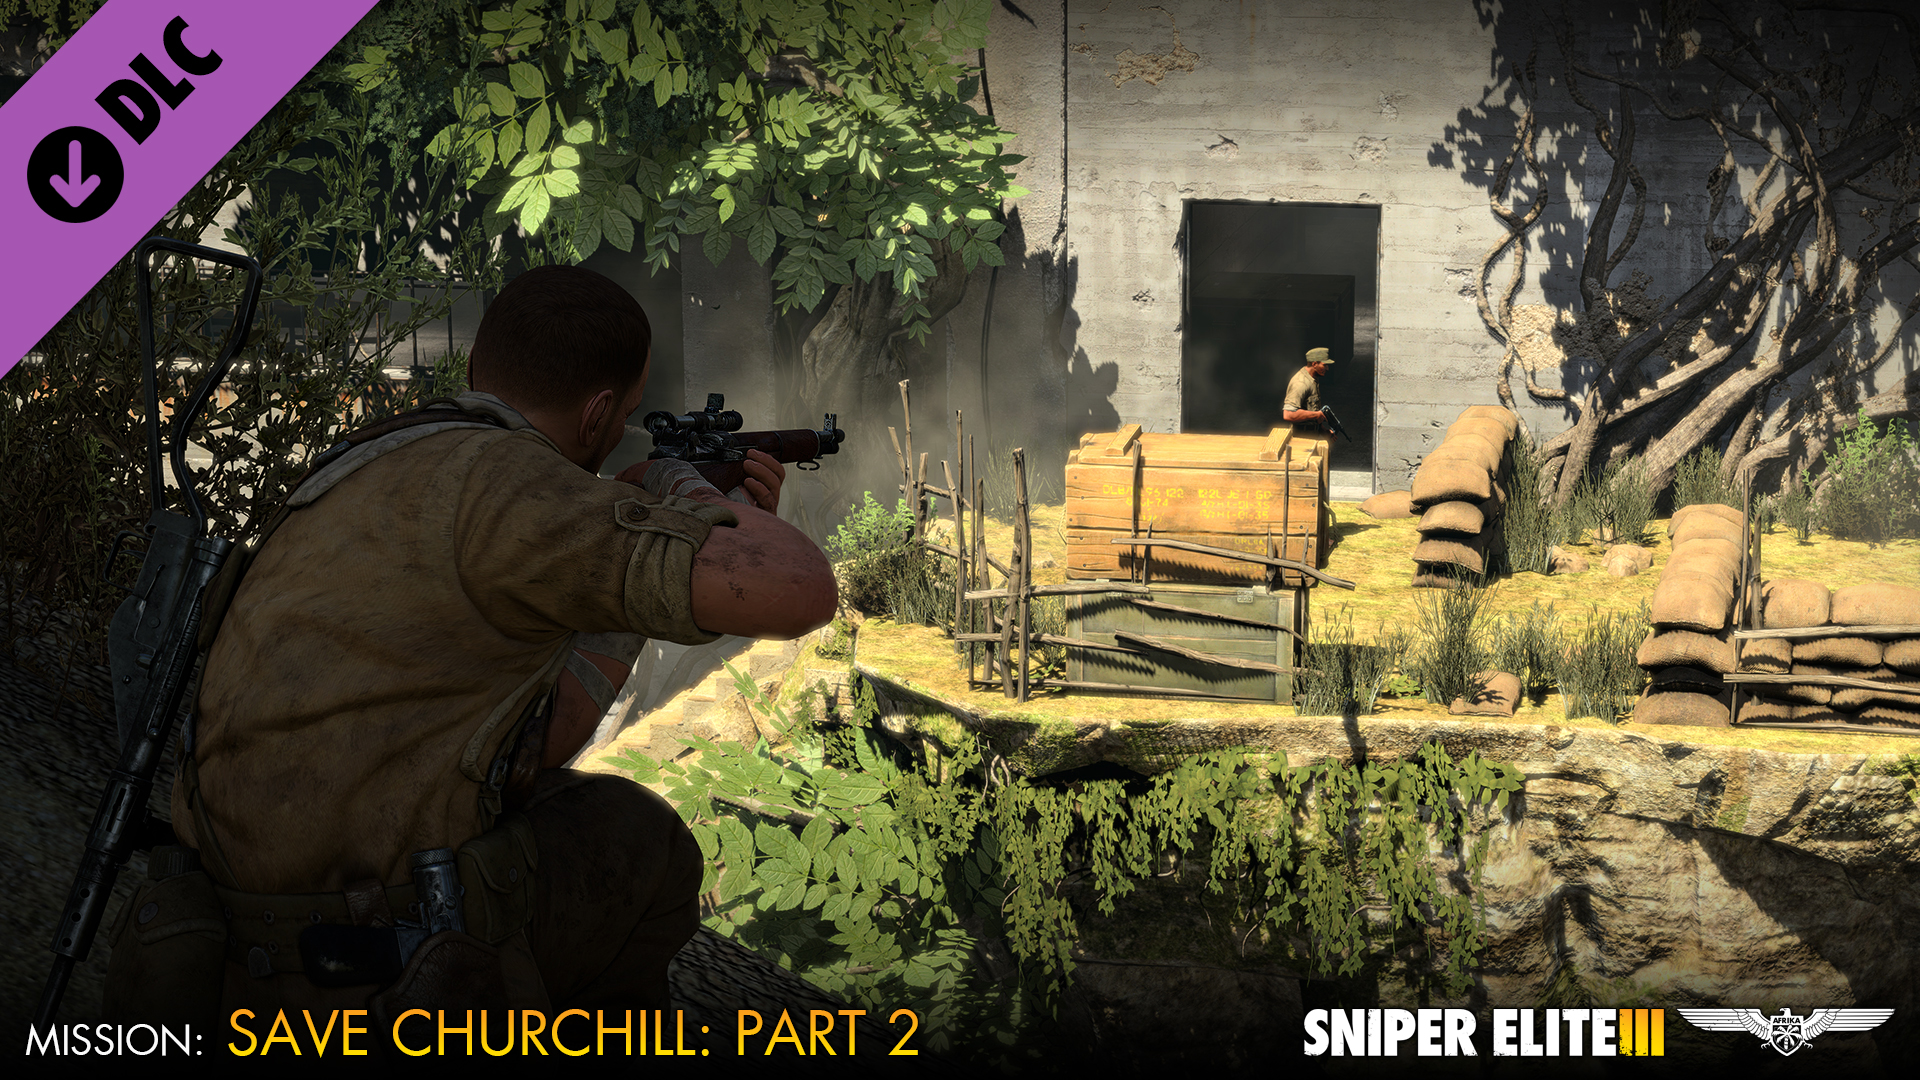 Sniper elite 3 mở chiến dịch 'Save Churchill' phần 2